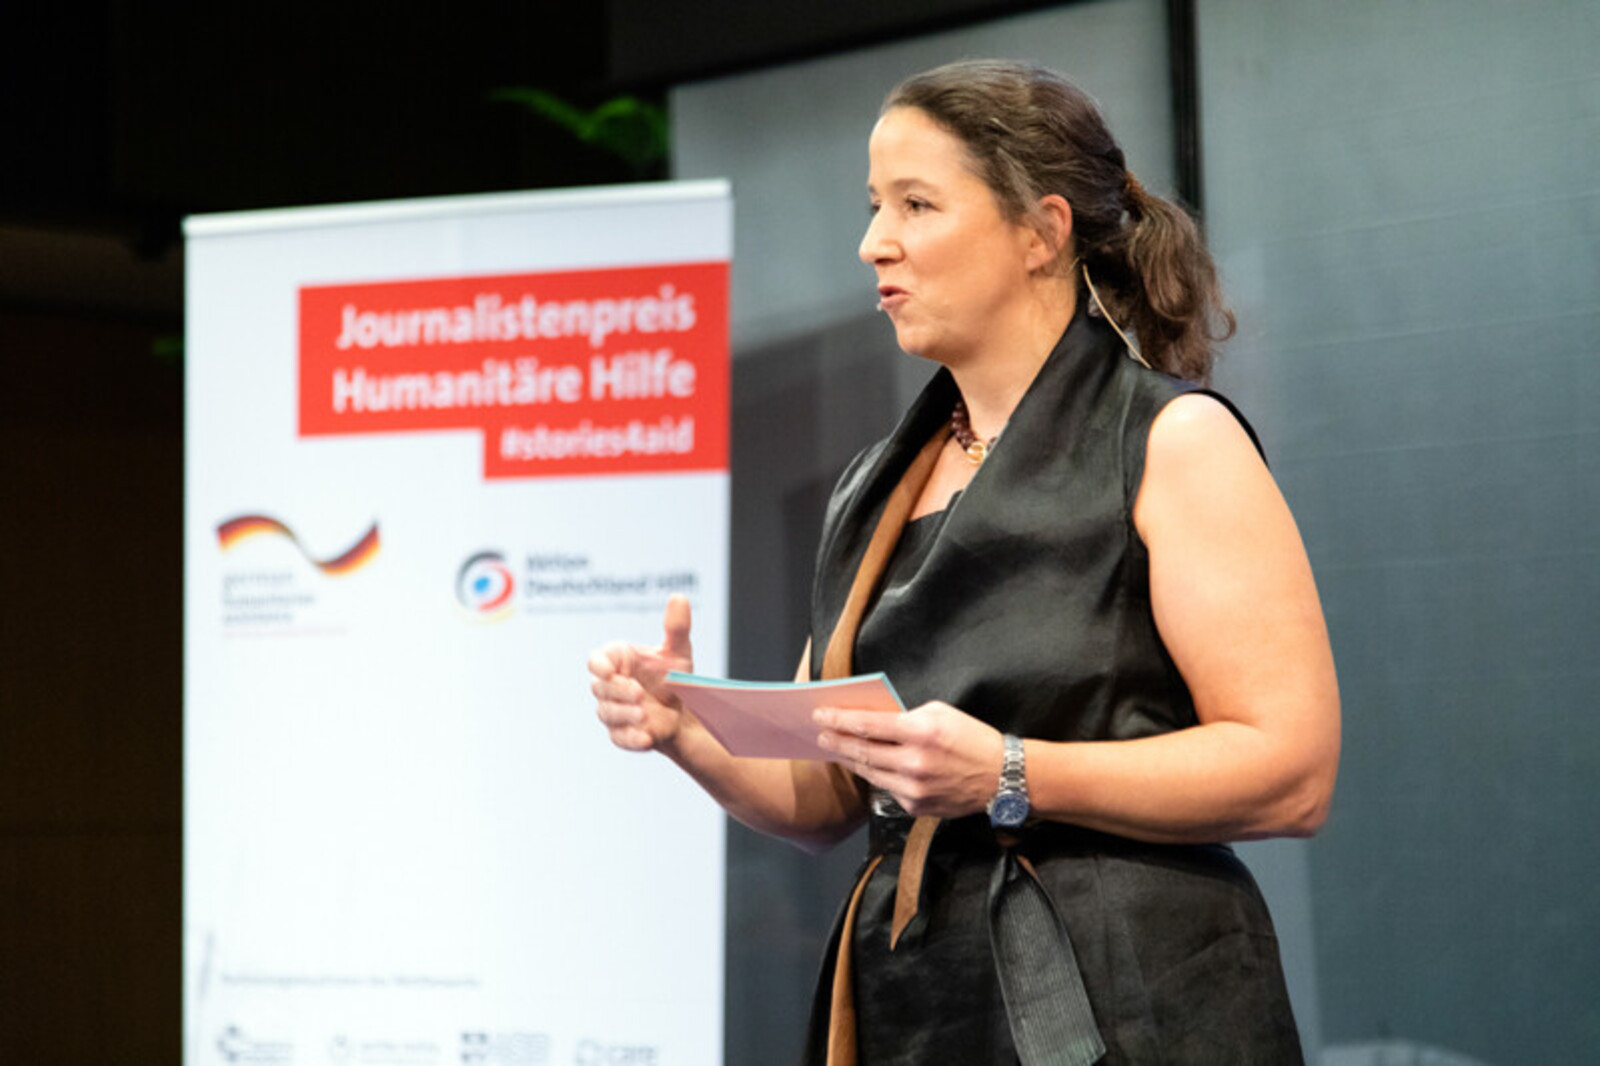 Moderatorin Ariane Reimers bei der Preisverleihung zum Journalistenpreis Humanitäre Hilfe